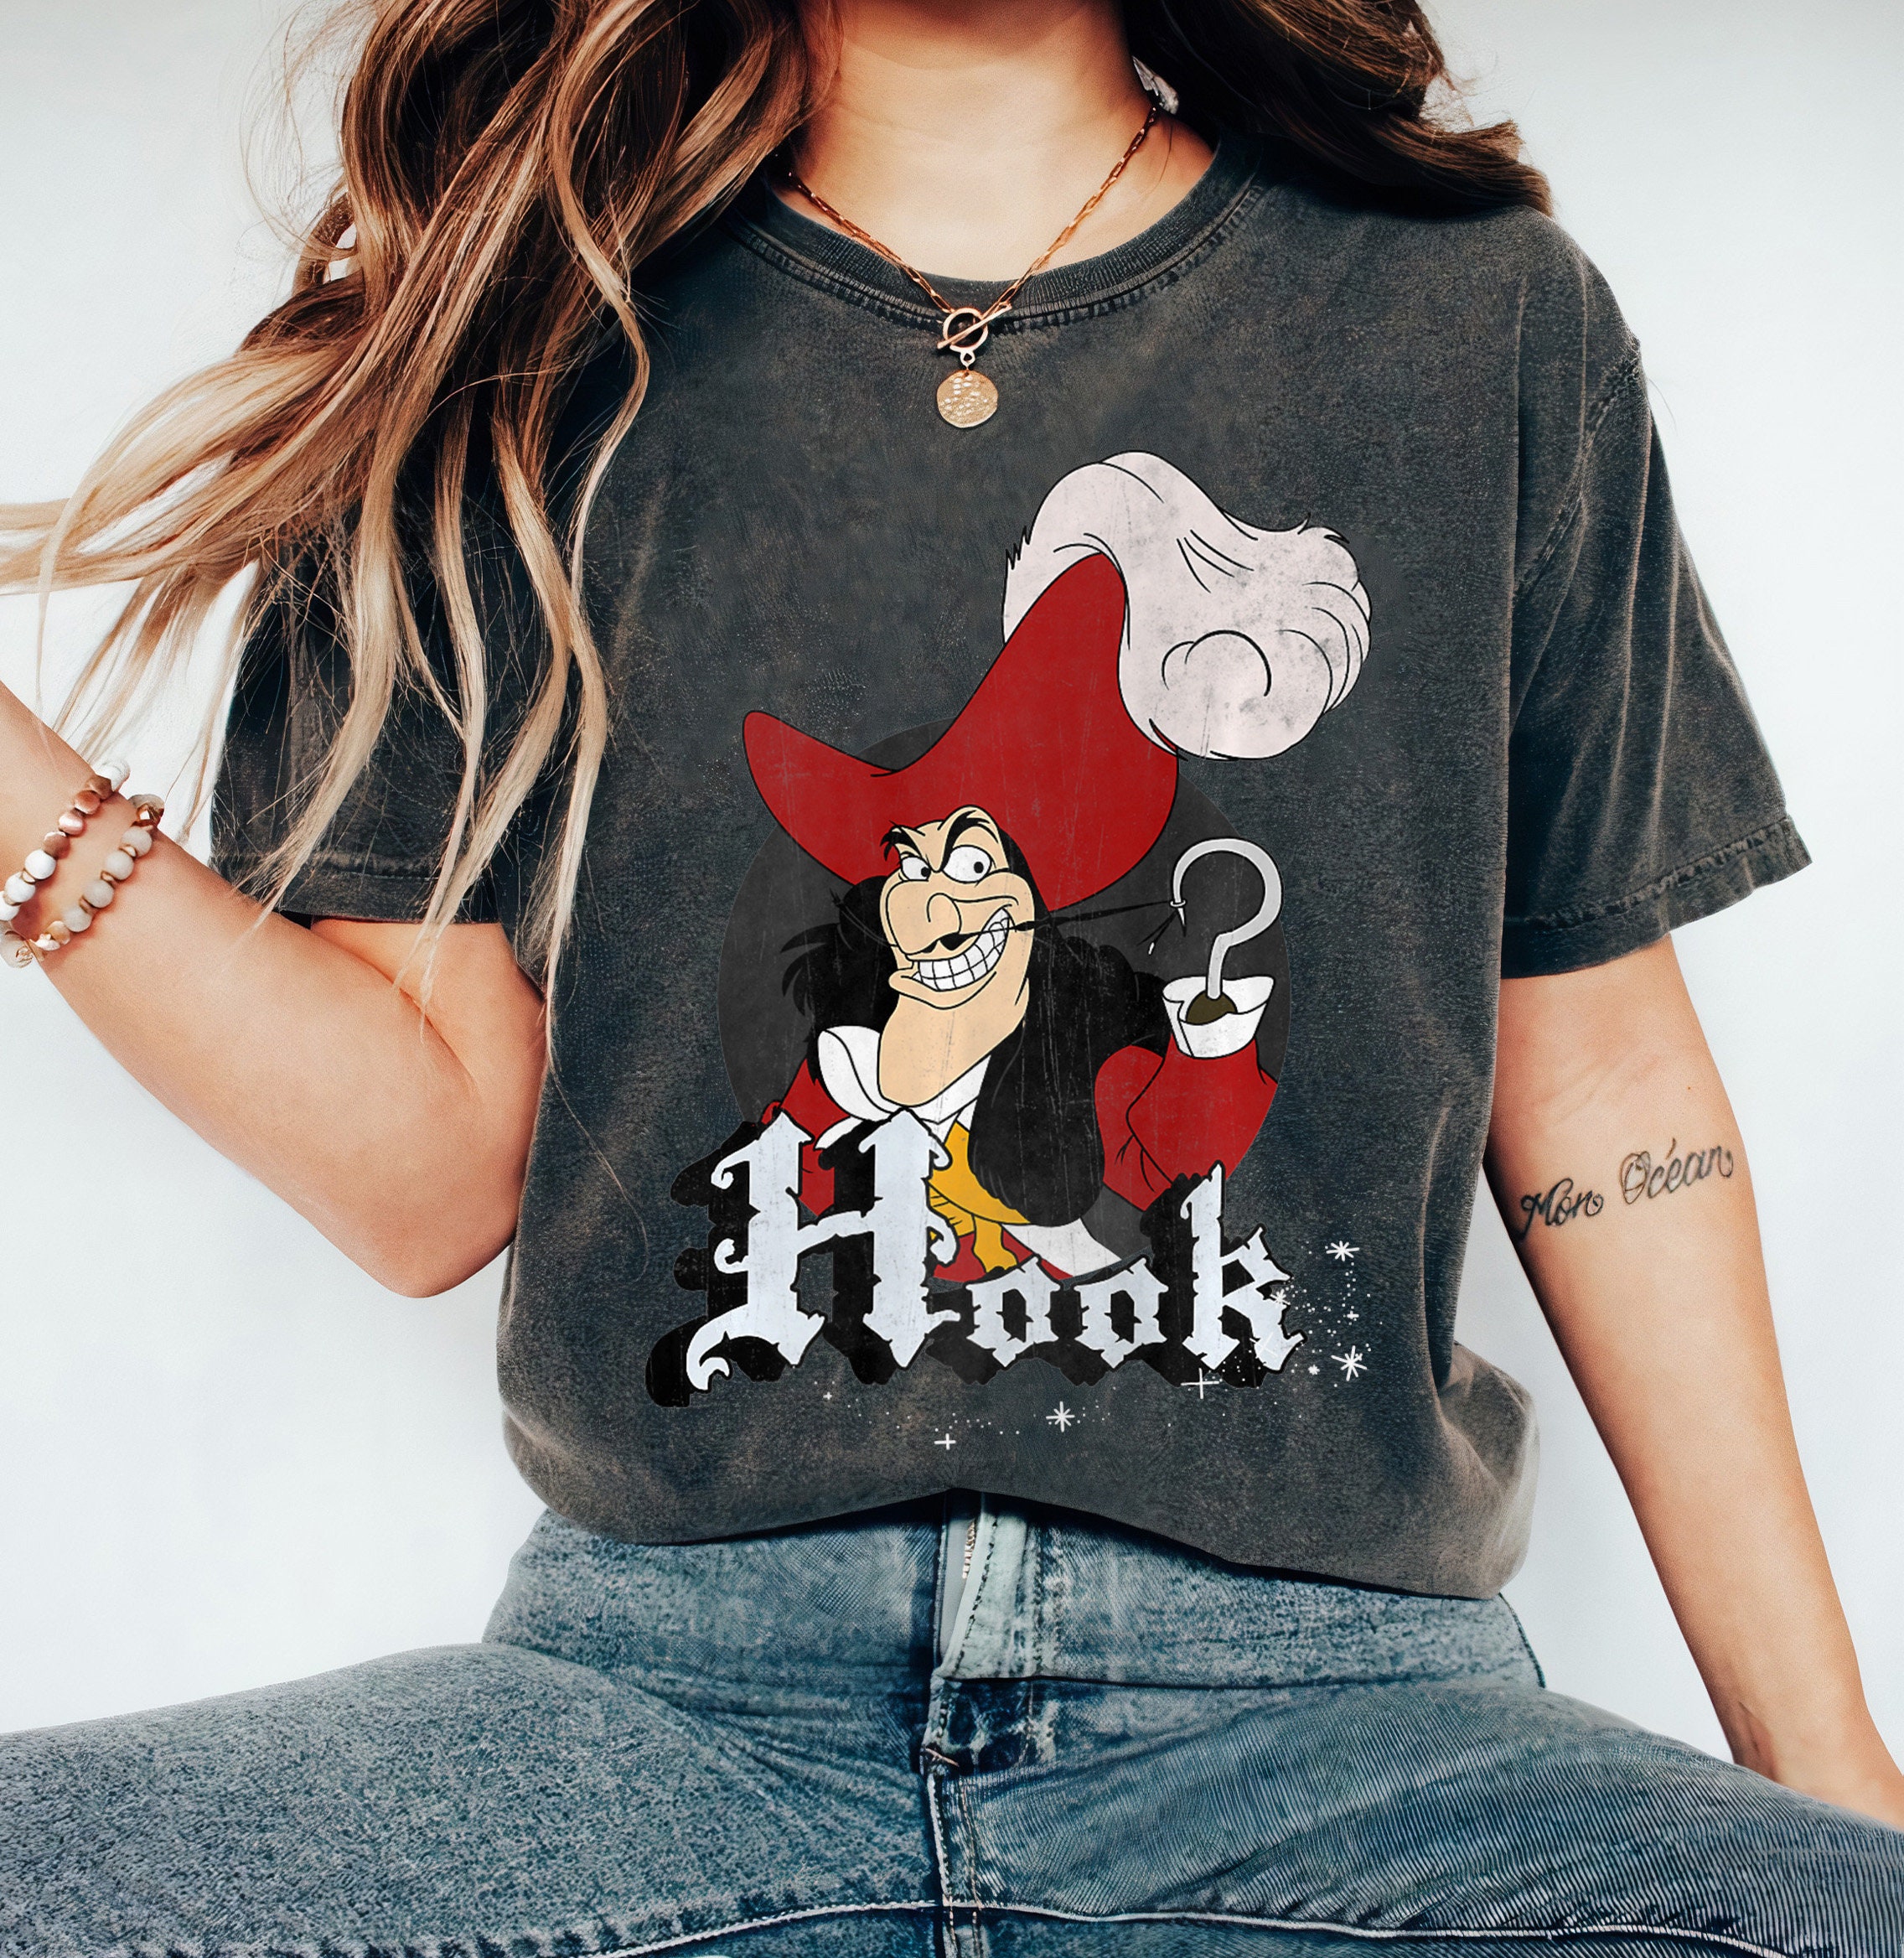 Captain Hook Shirt 